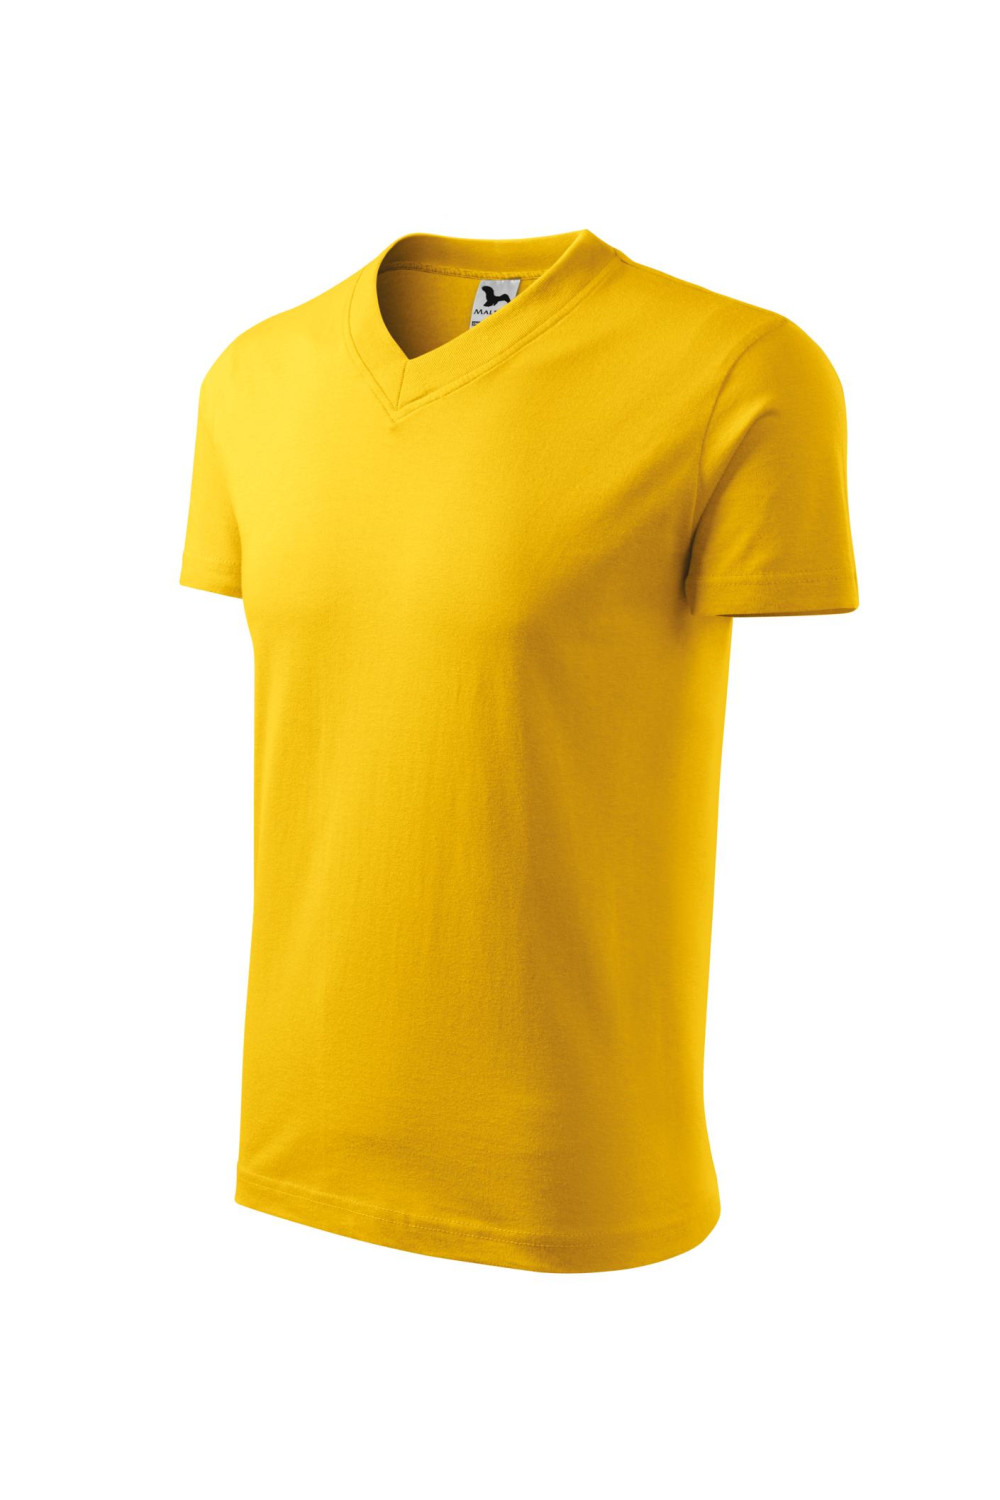 V-NECK 102 MALFINI Koszulka unisex 100% bawełna t-shirt żółty